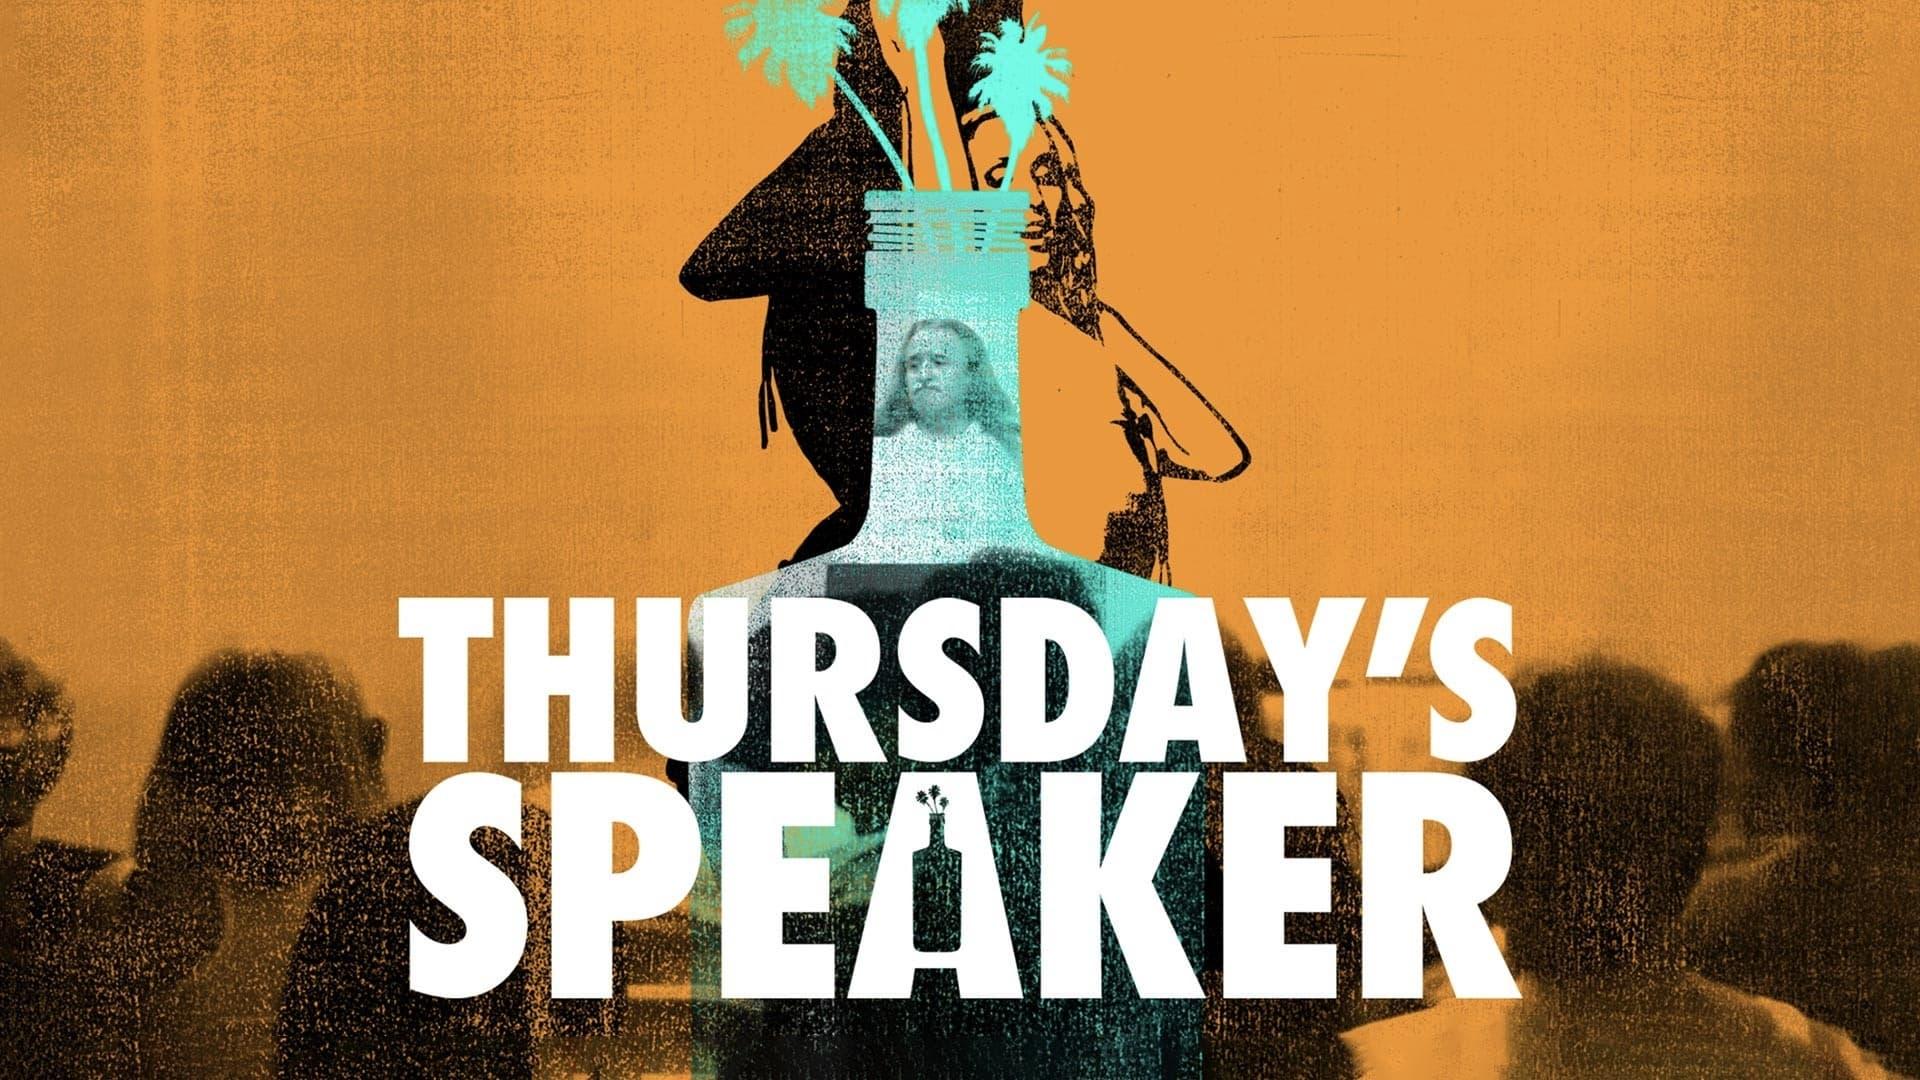 Thursday's Speaker backdrop